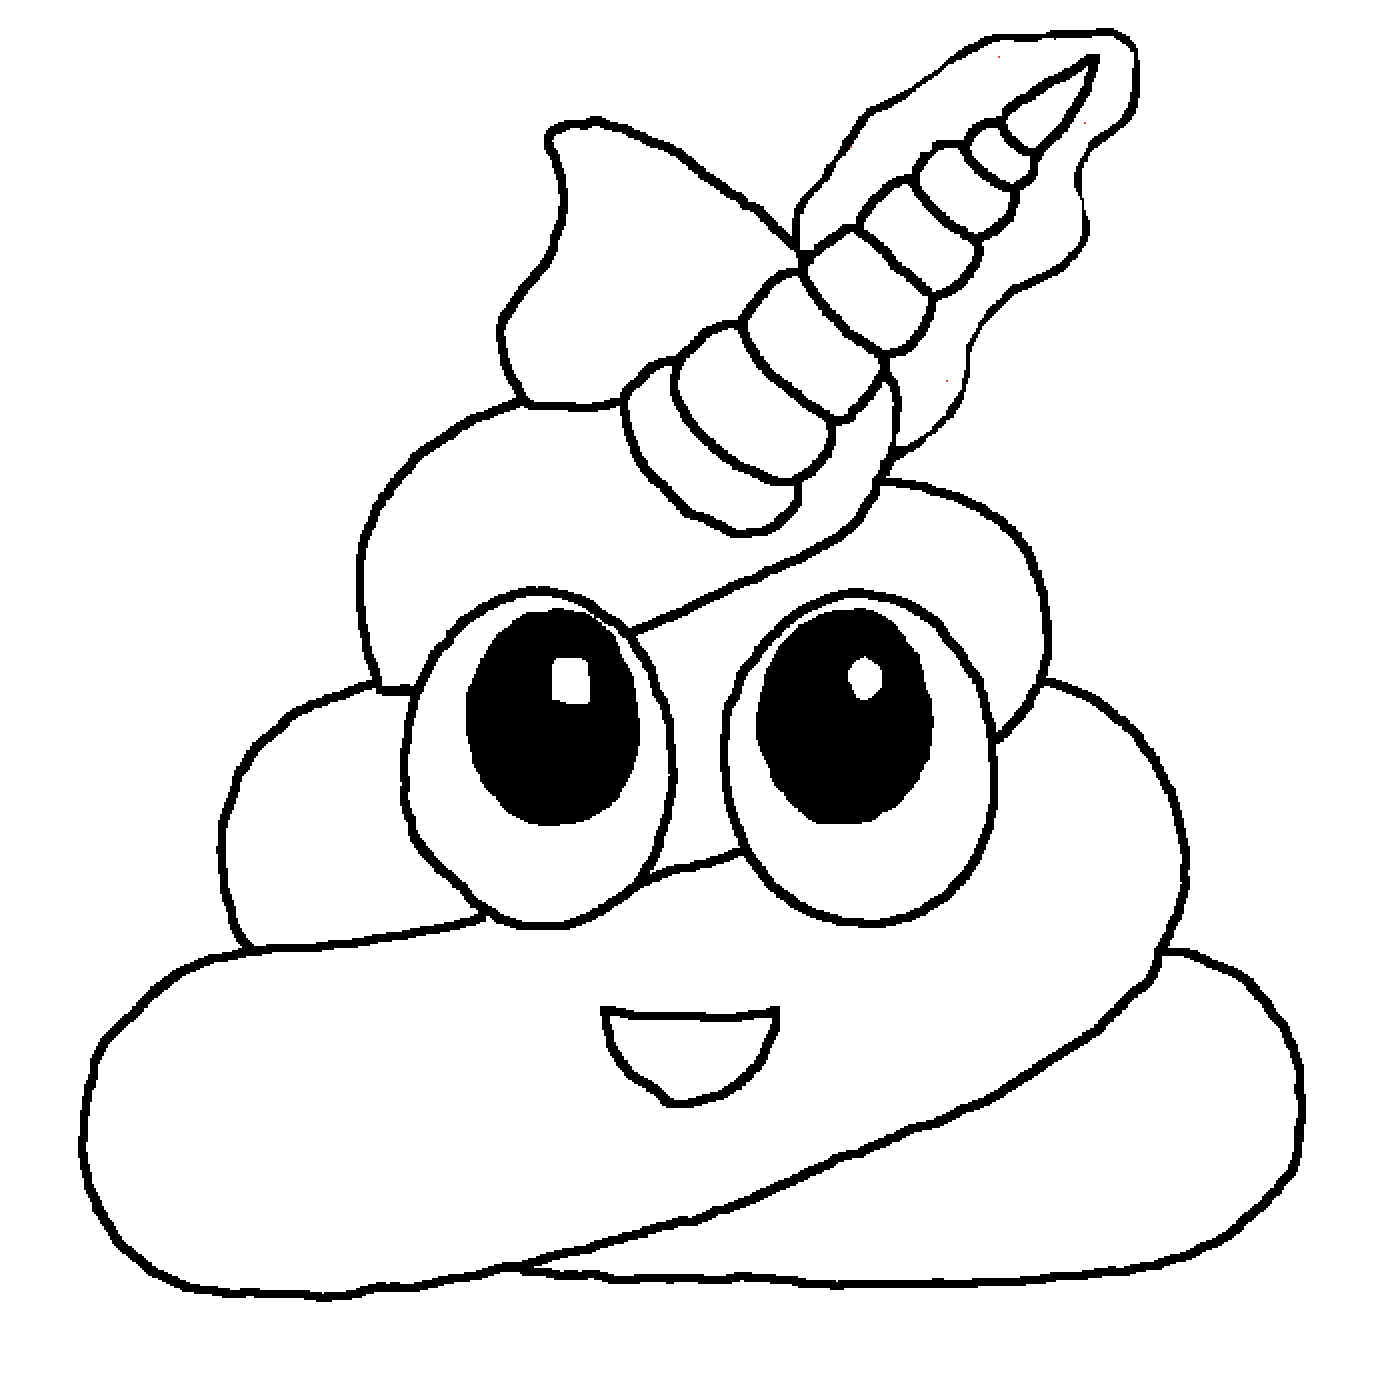 Poop Emoji Drawing | Free download on ClipArtMag